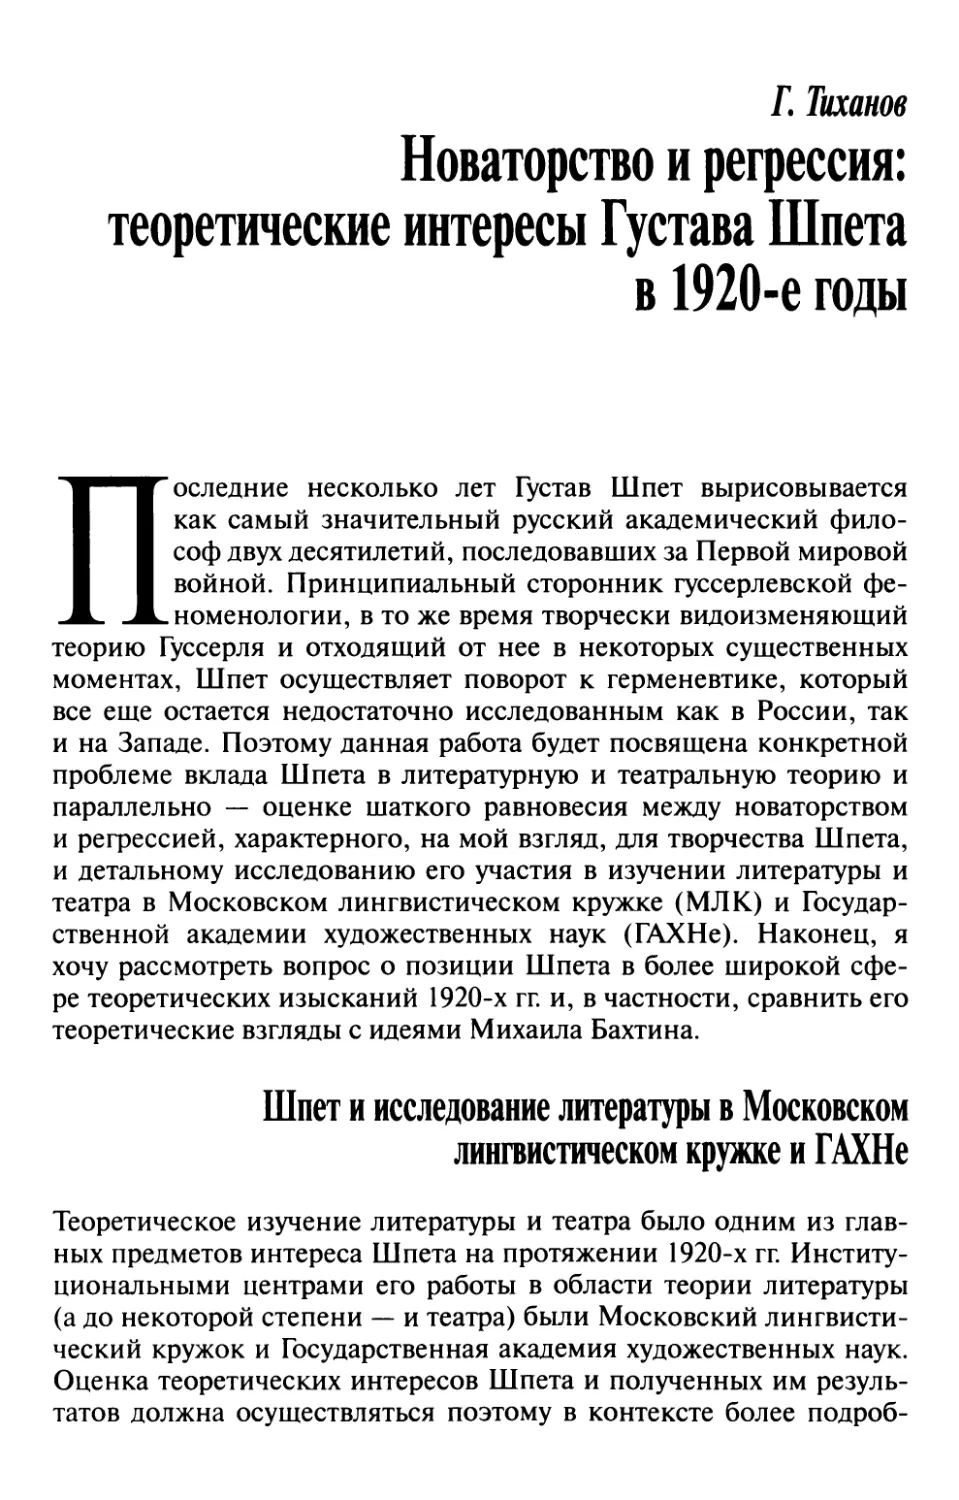 Тиханов Г.  Новаторство и регрессия: теоретические интересы Густава Шпета в 1920-е годы